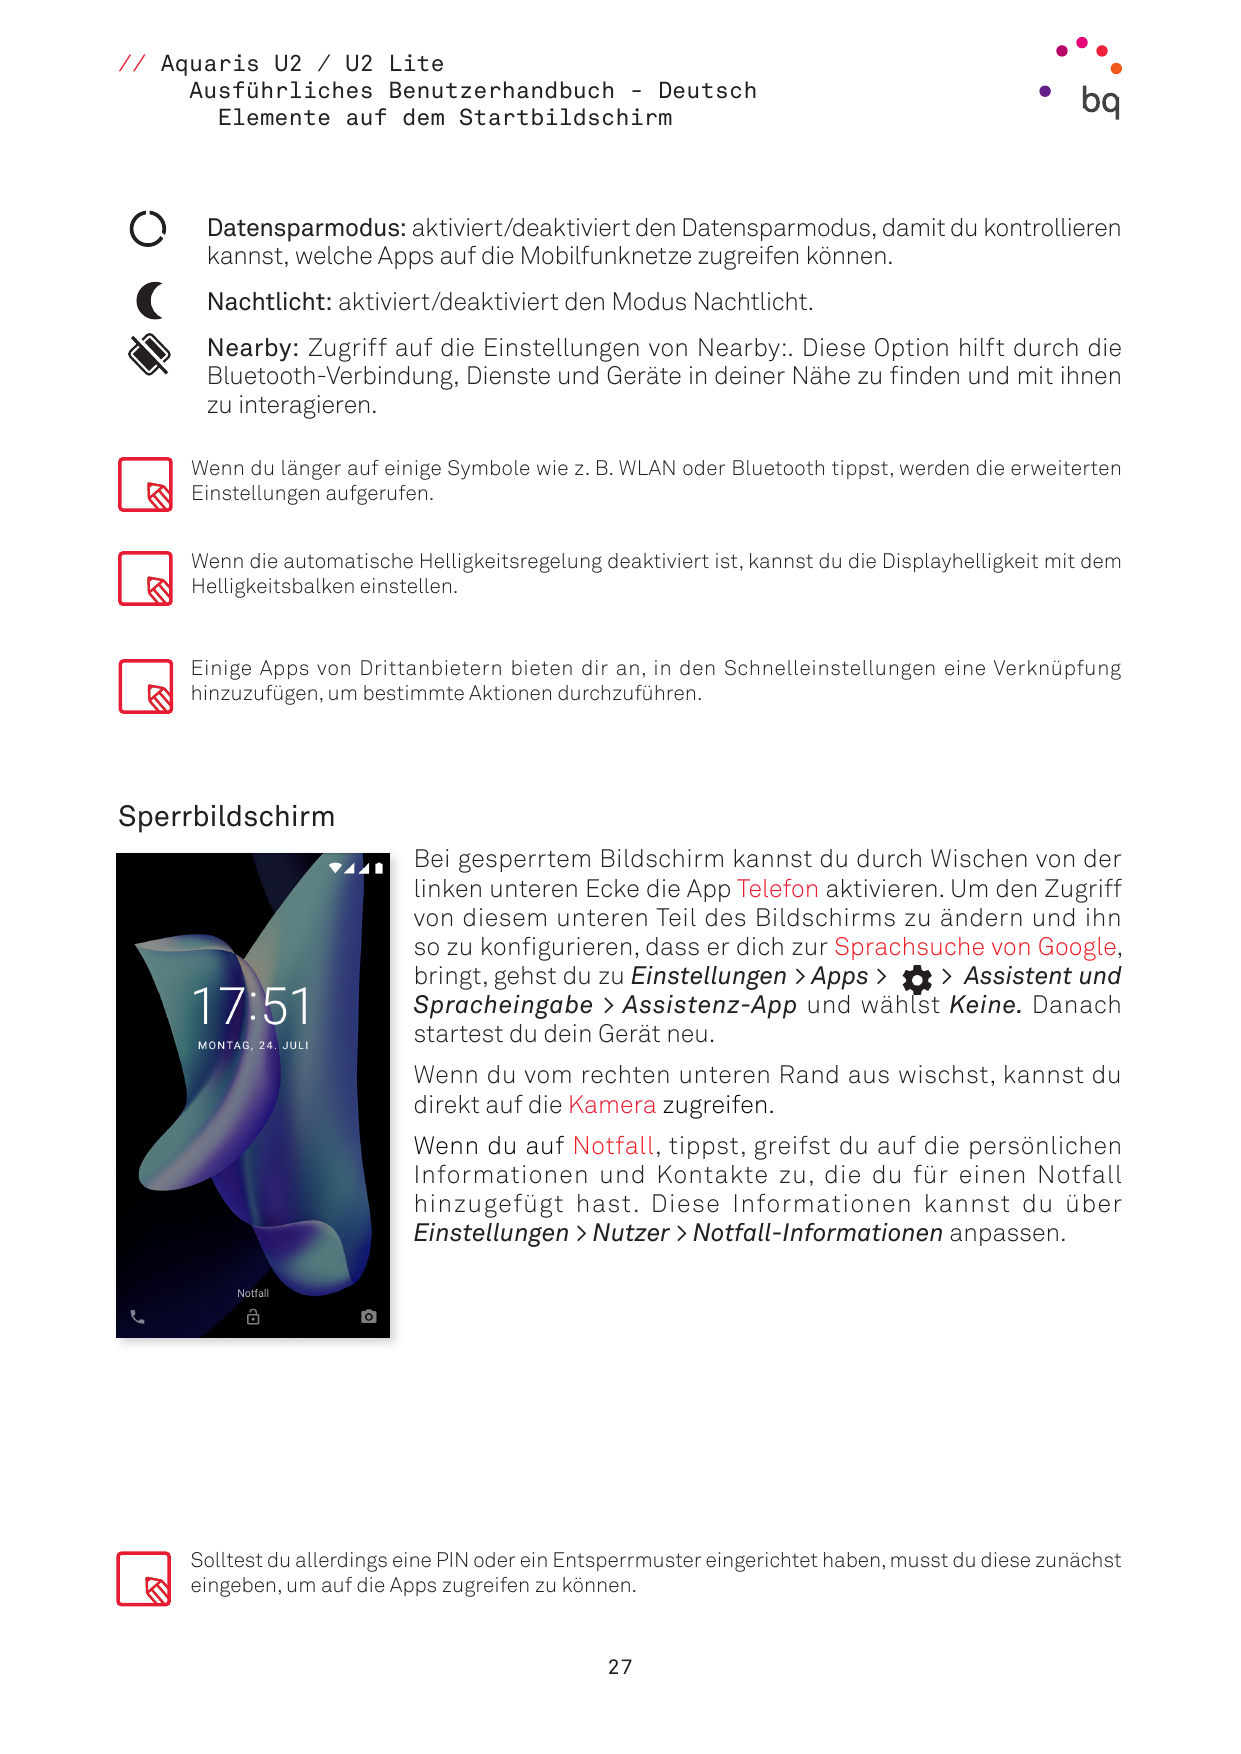 // Aquaris U2 / U2 LiteAusführliches Benutzerhandbuch - DeutschElemente auf dem StartbildschirmDatensparmodus: aktiviert/deaktiv